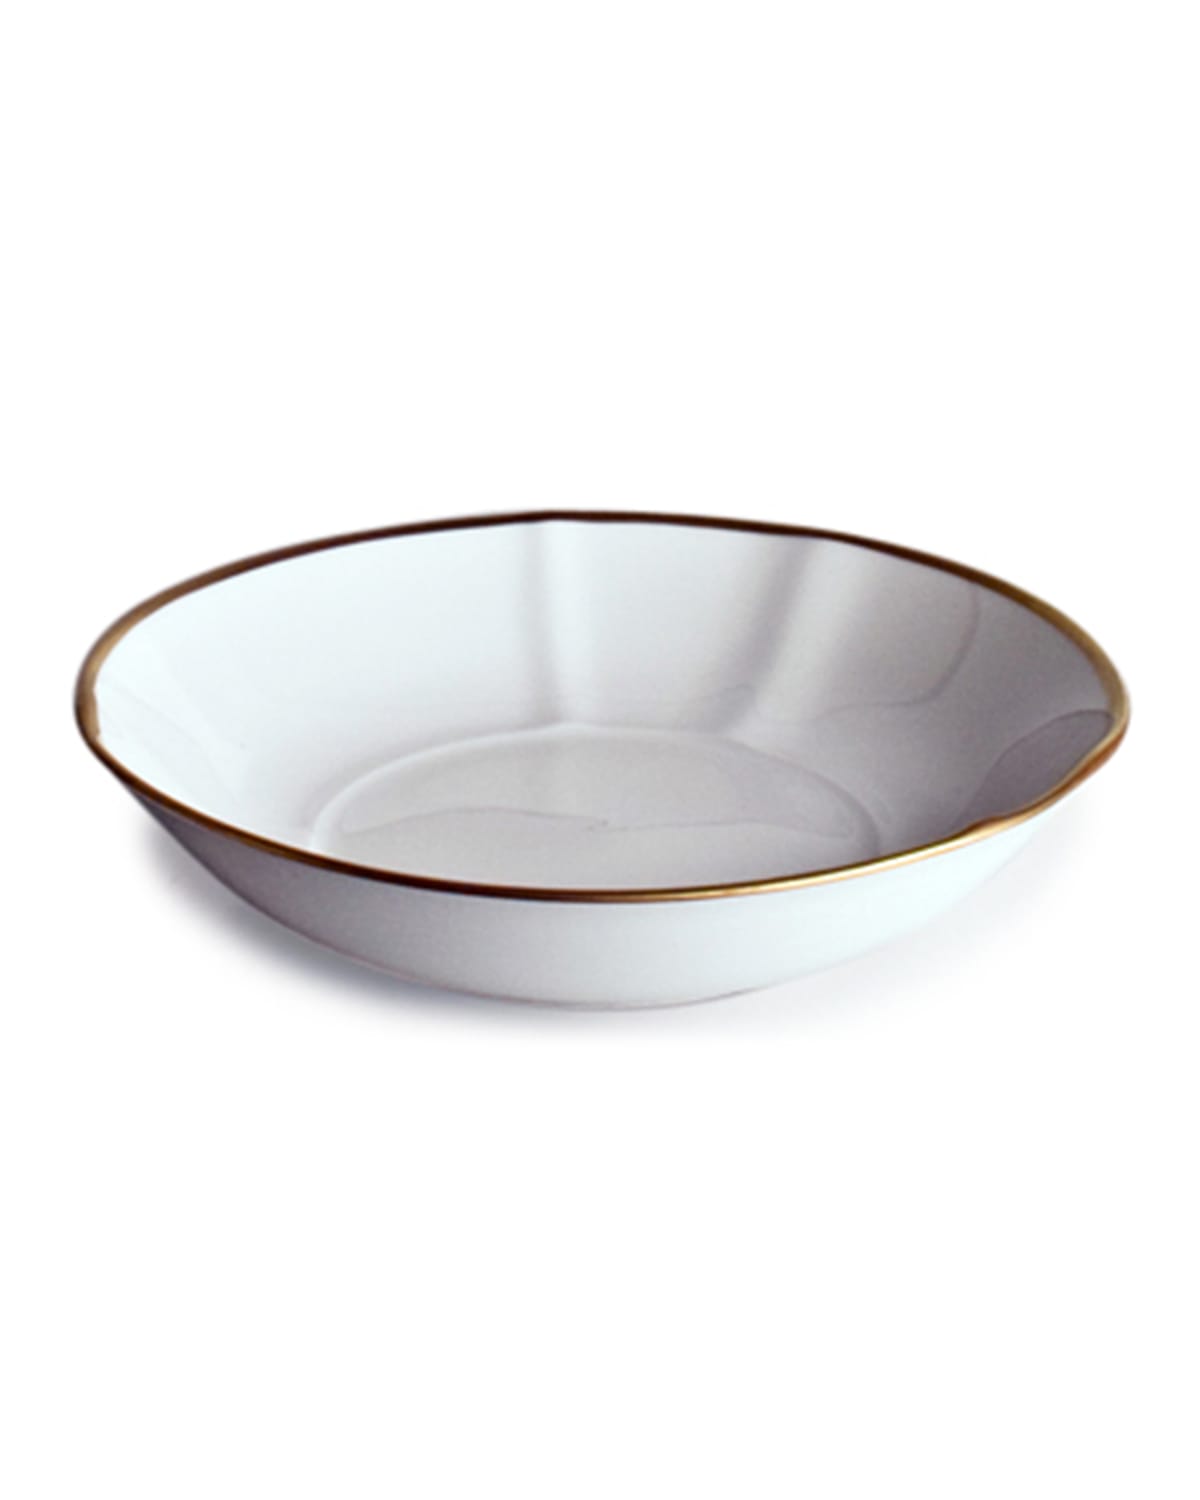 Simply Elegant Rim Soup Bowl